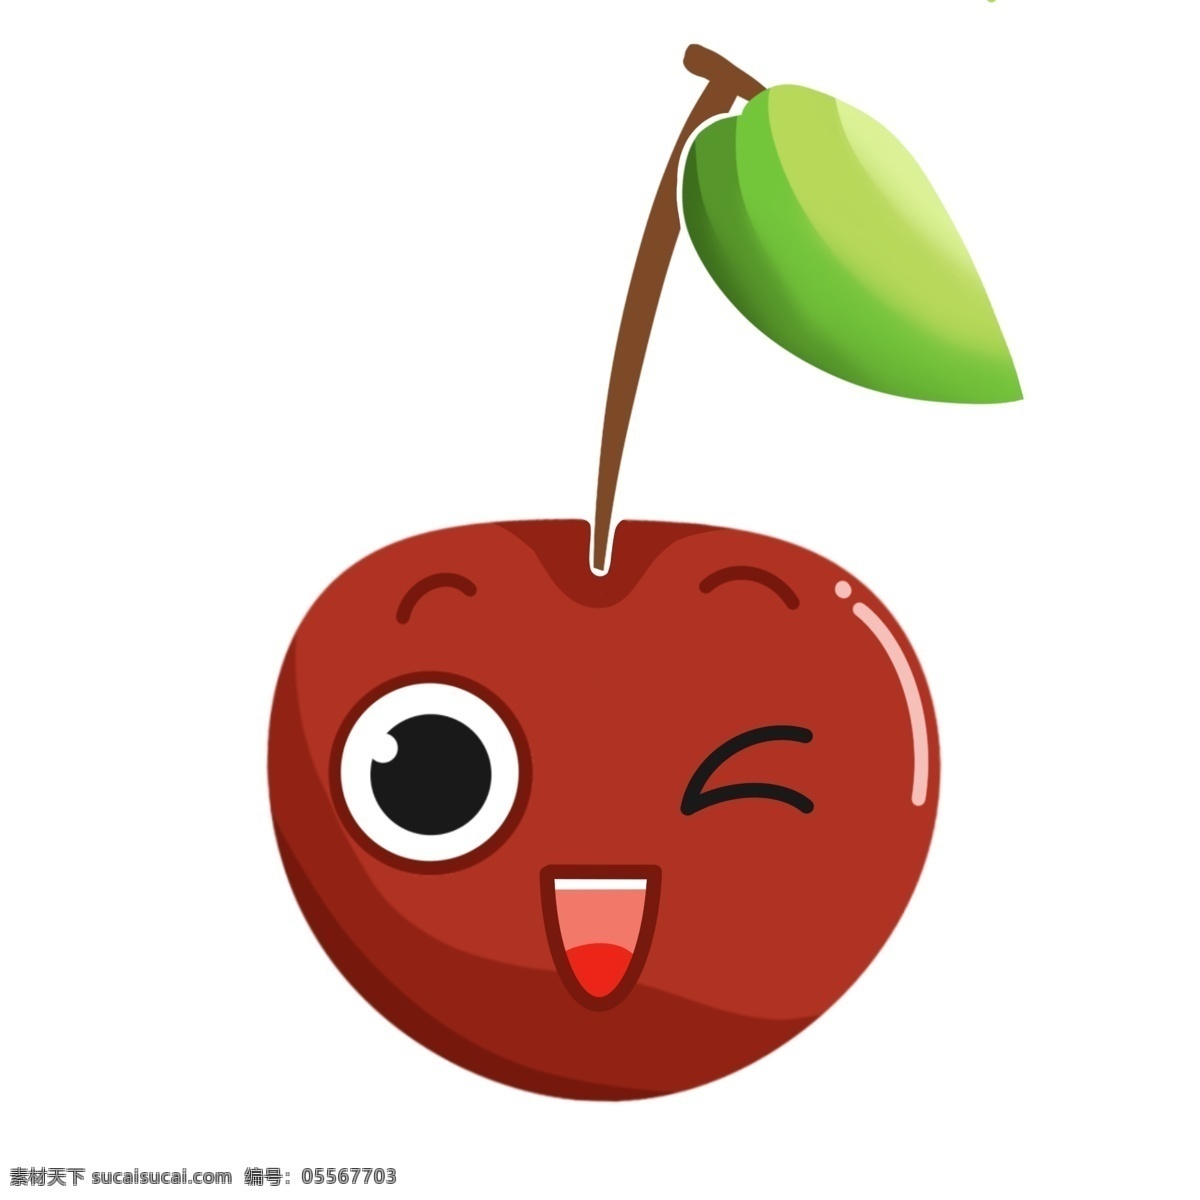 樱桃 红色 自然 培育 可爱 清新 大自然 甜 圆形 绿色 味道 水果 植物 种植 生长 绿色食品 维生素 卡通 装饰画 装饰